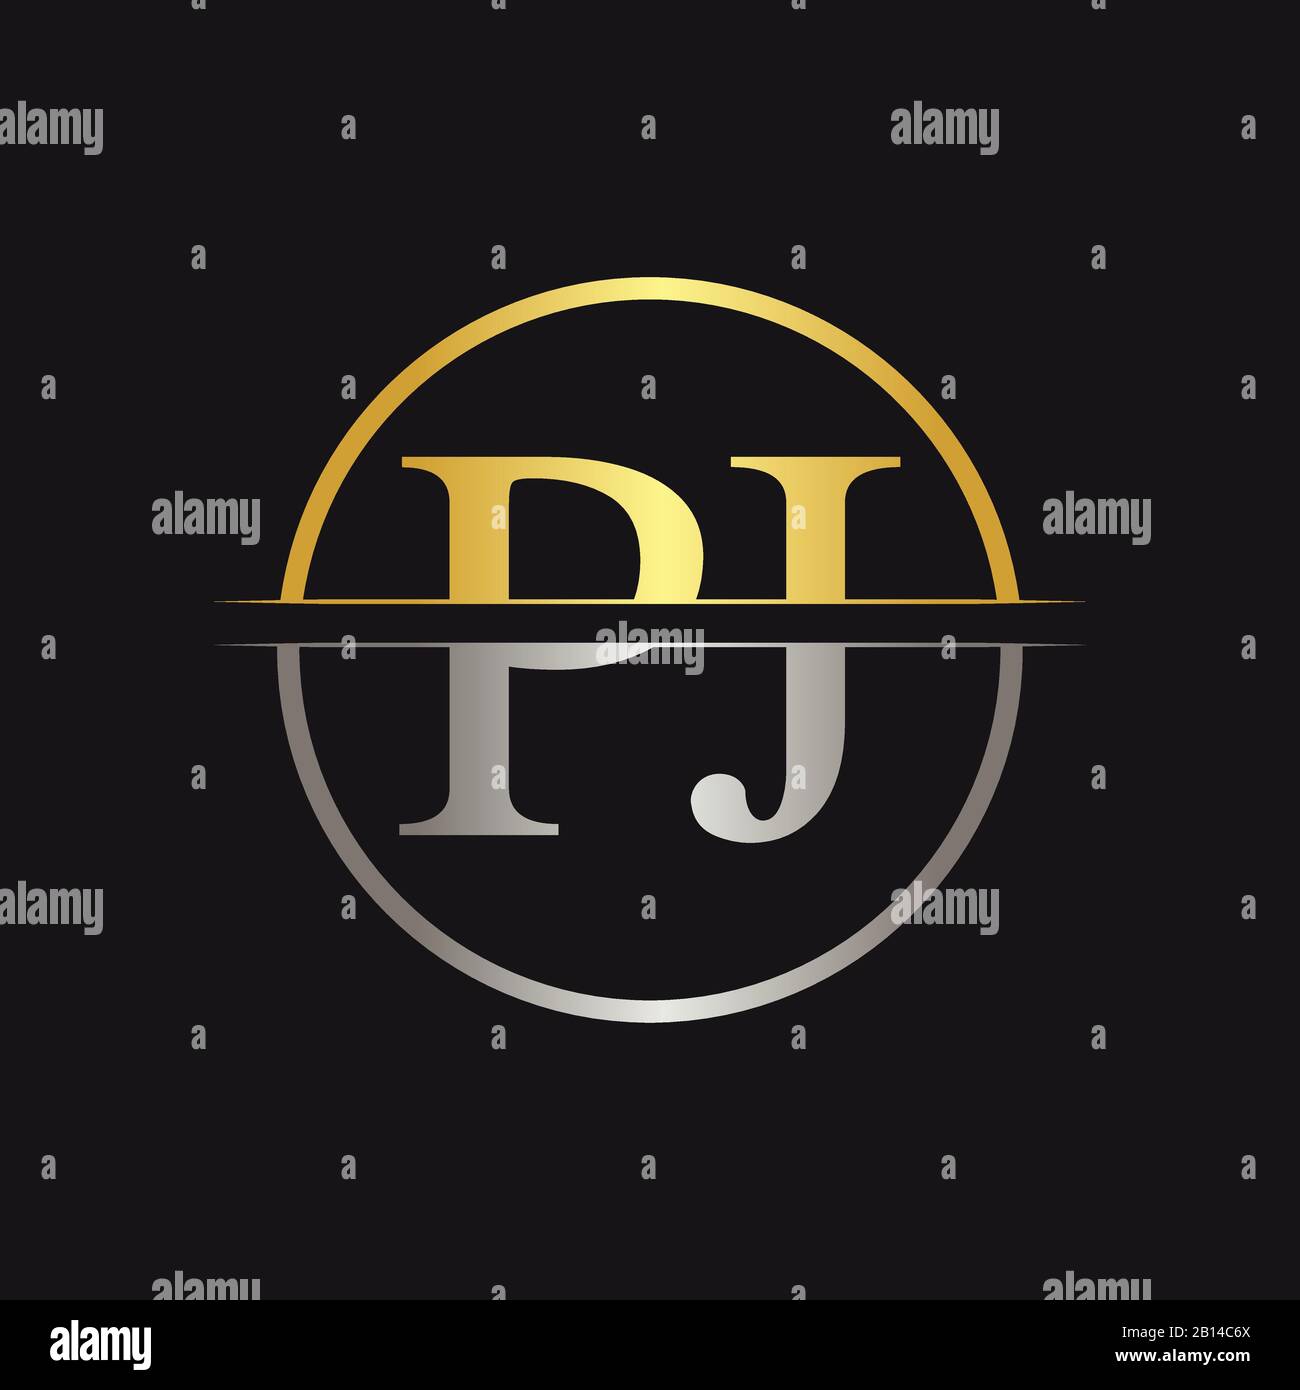 Initial Monogram Letter PJ Logo Design Vector Template. PJ Letter Logo Design Stock Vector